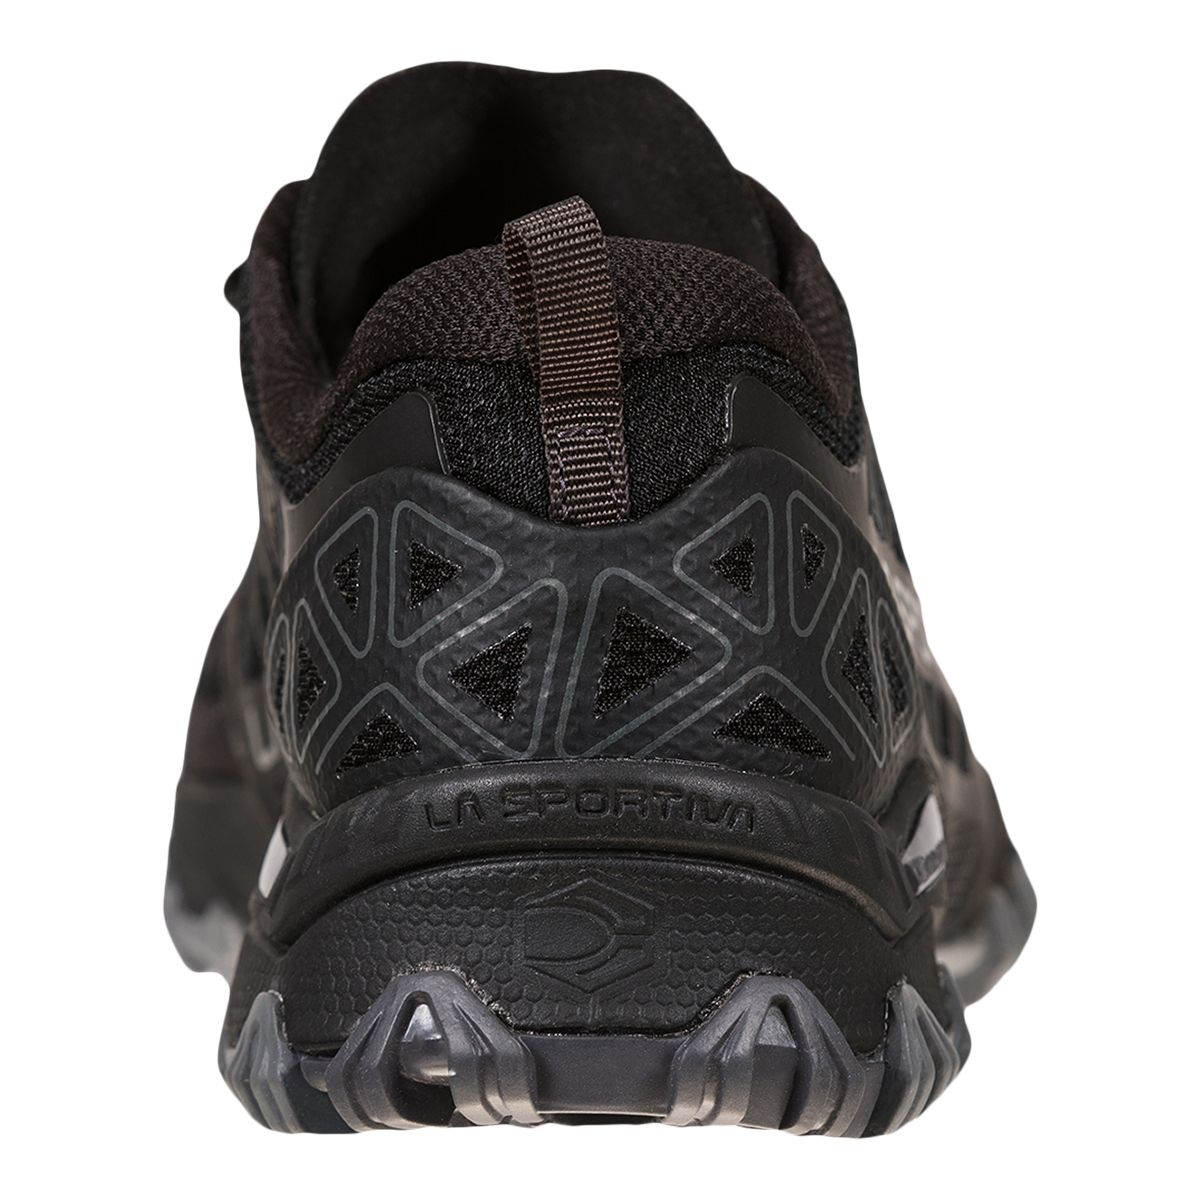 La Sportiva Women's Bushido II Comfortable Mesh Trail Running Shoes